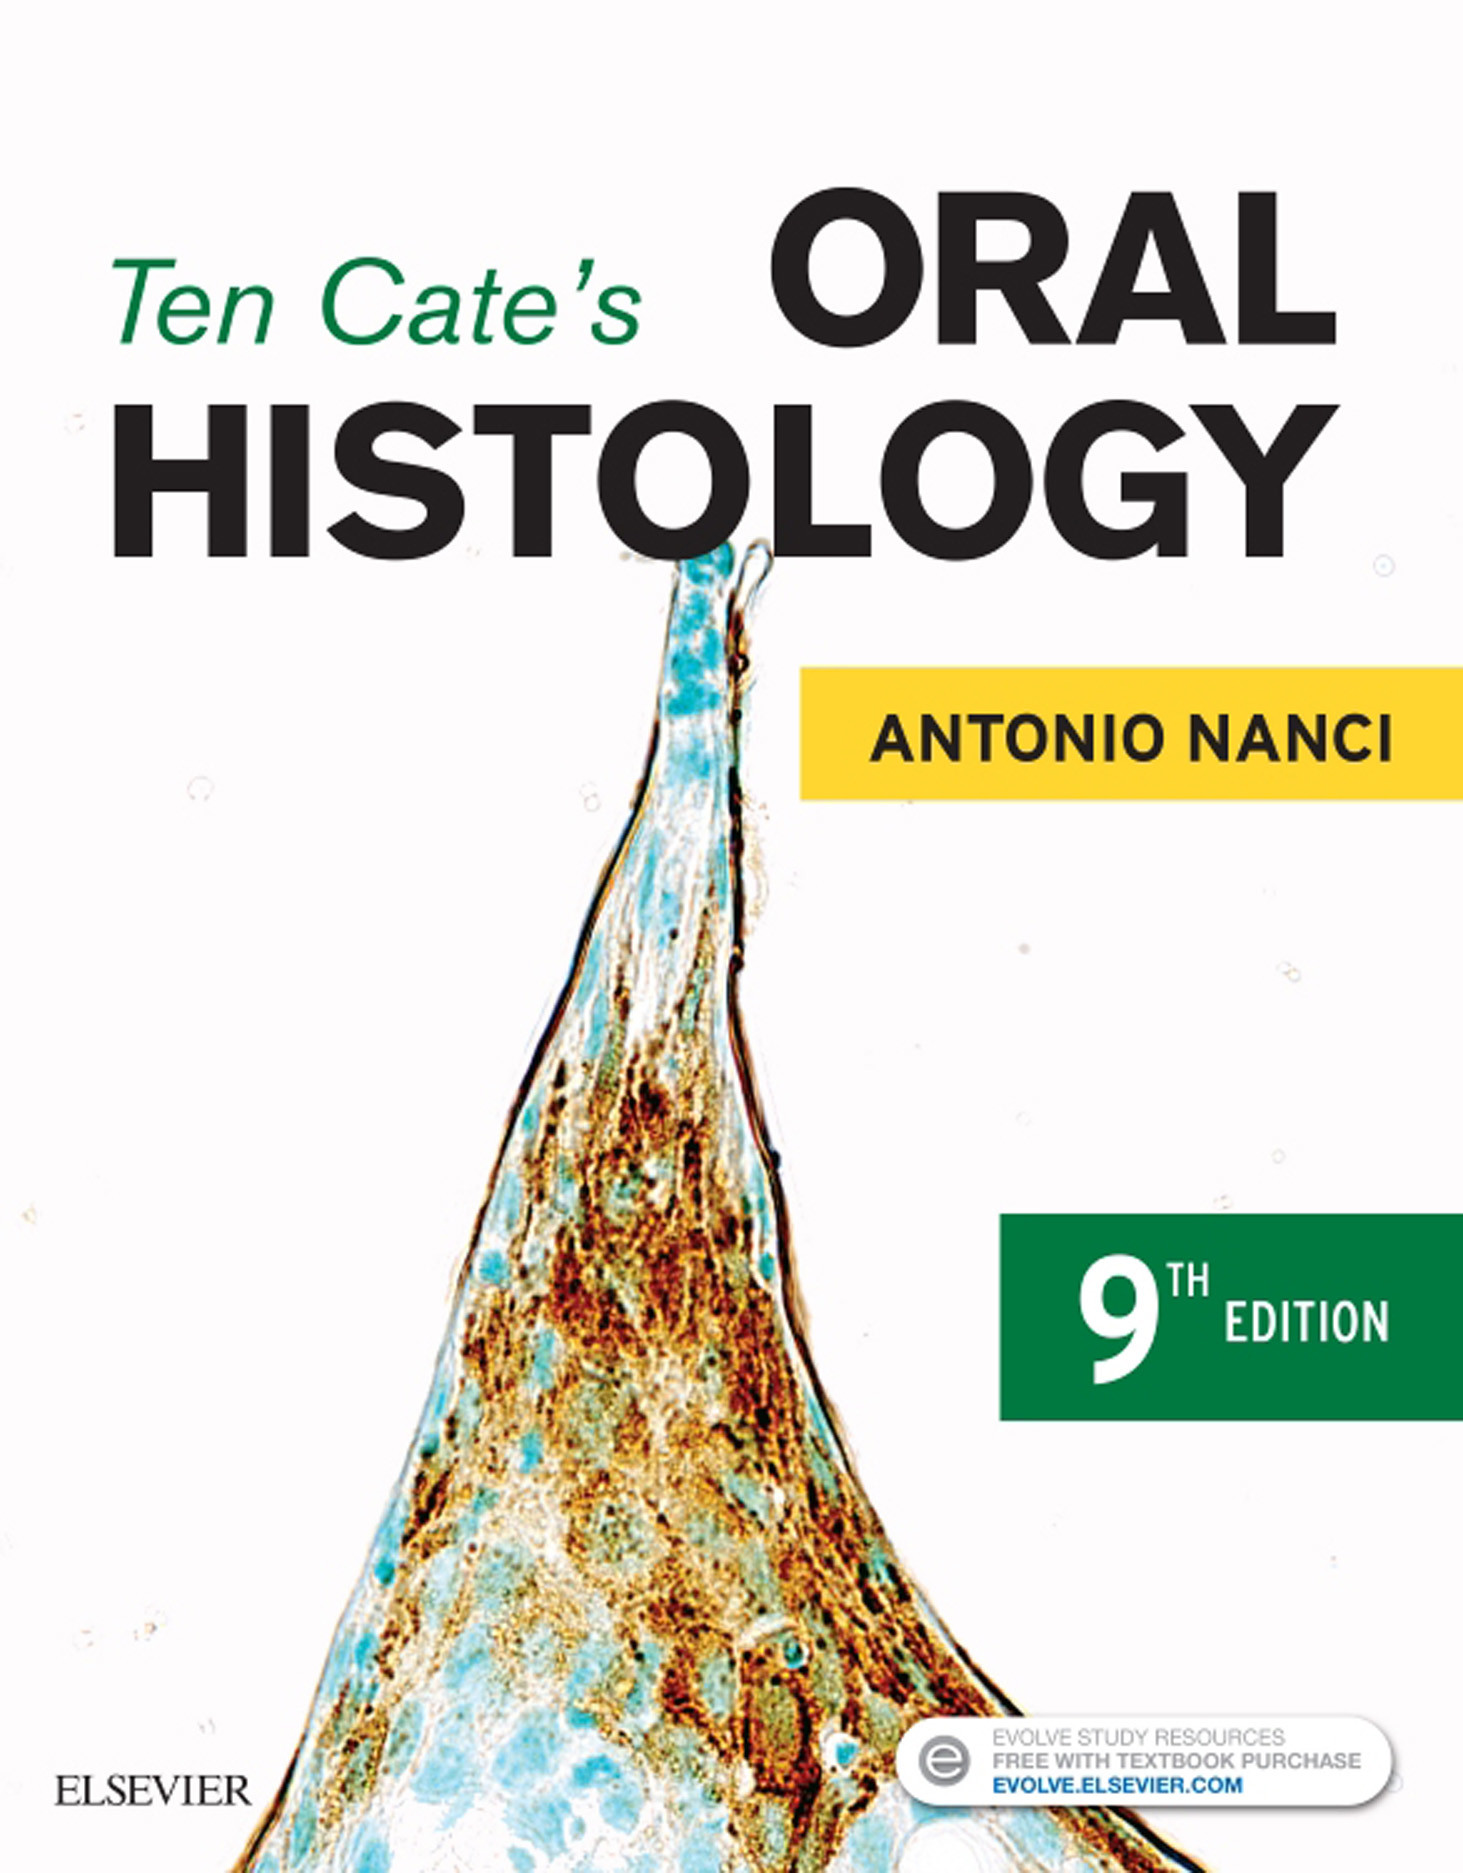 Ten Cate's Oral Histology - E-Book